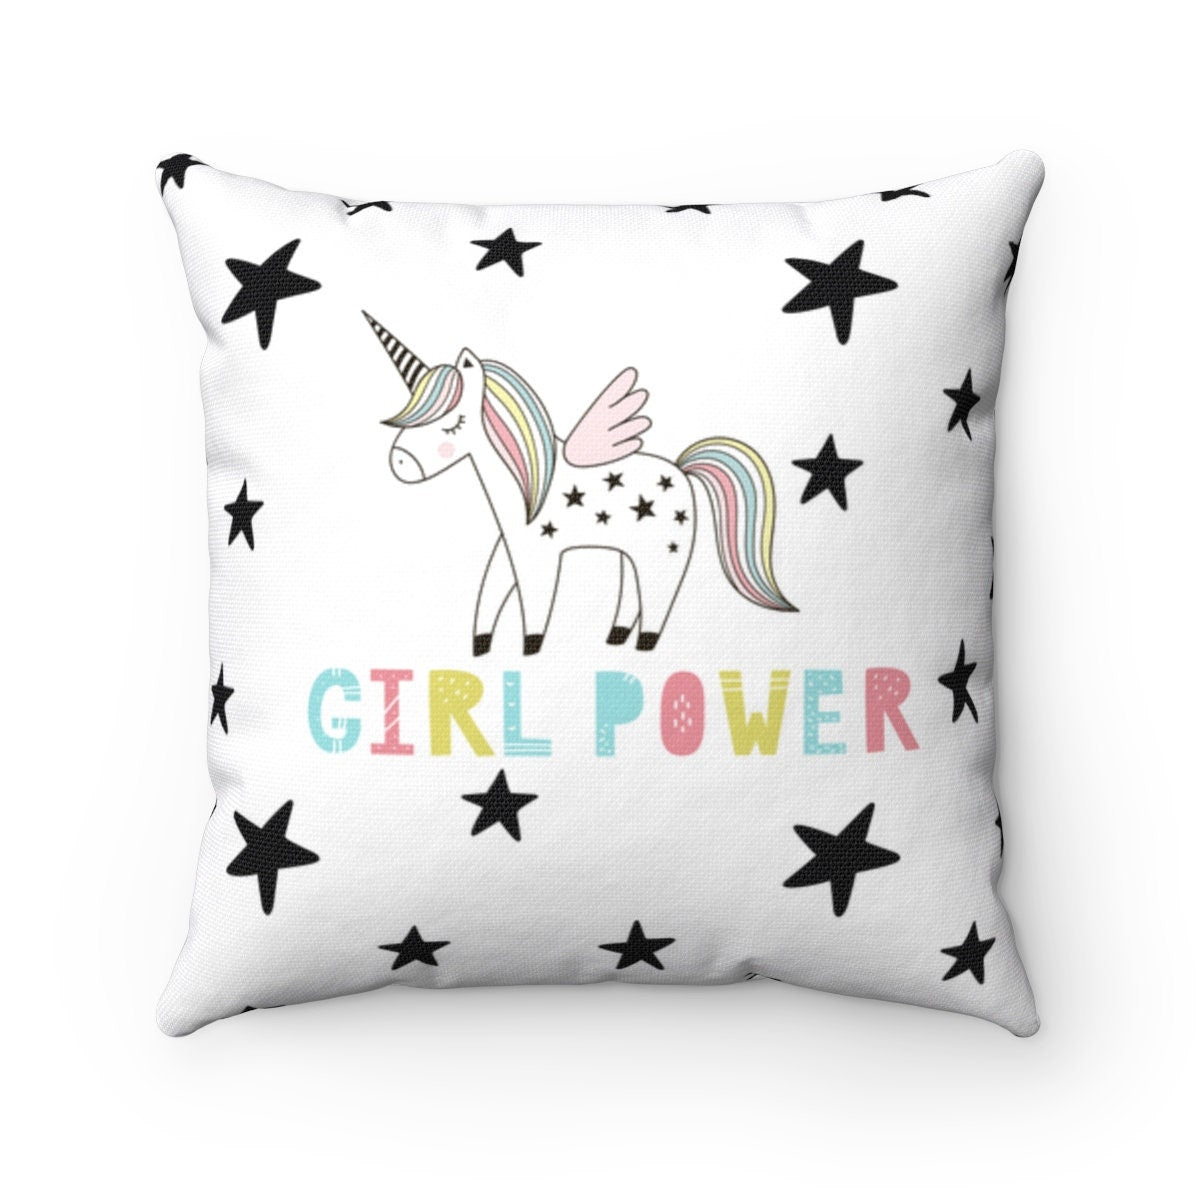 Unicorn Girl Power Square Pillowcase, Girl Power, Unicorn, Pillowcase Cover, Toddler Room, Teen Room, Kid's Room